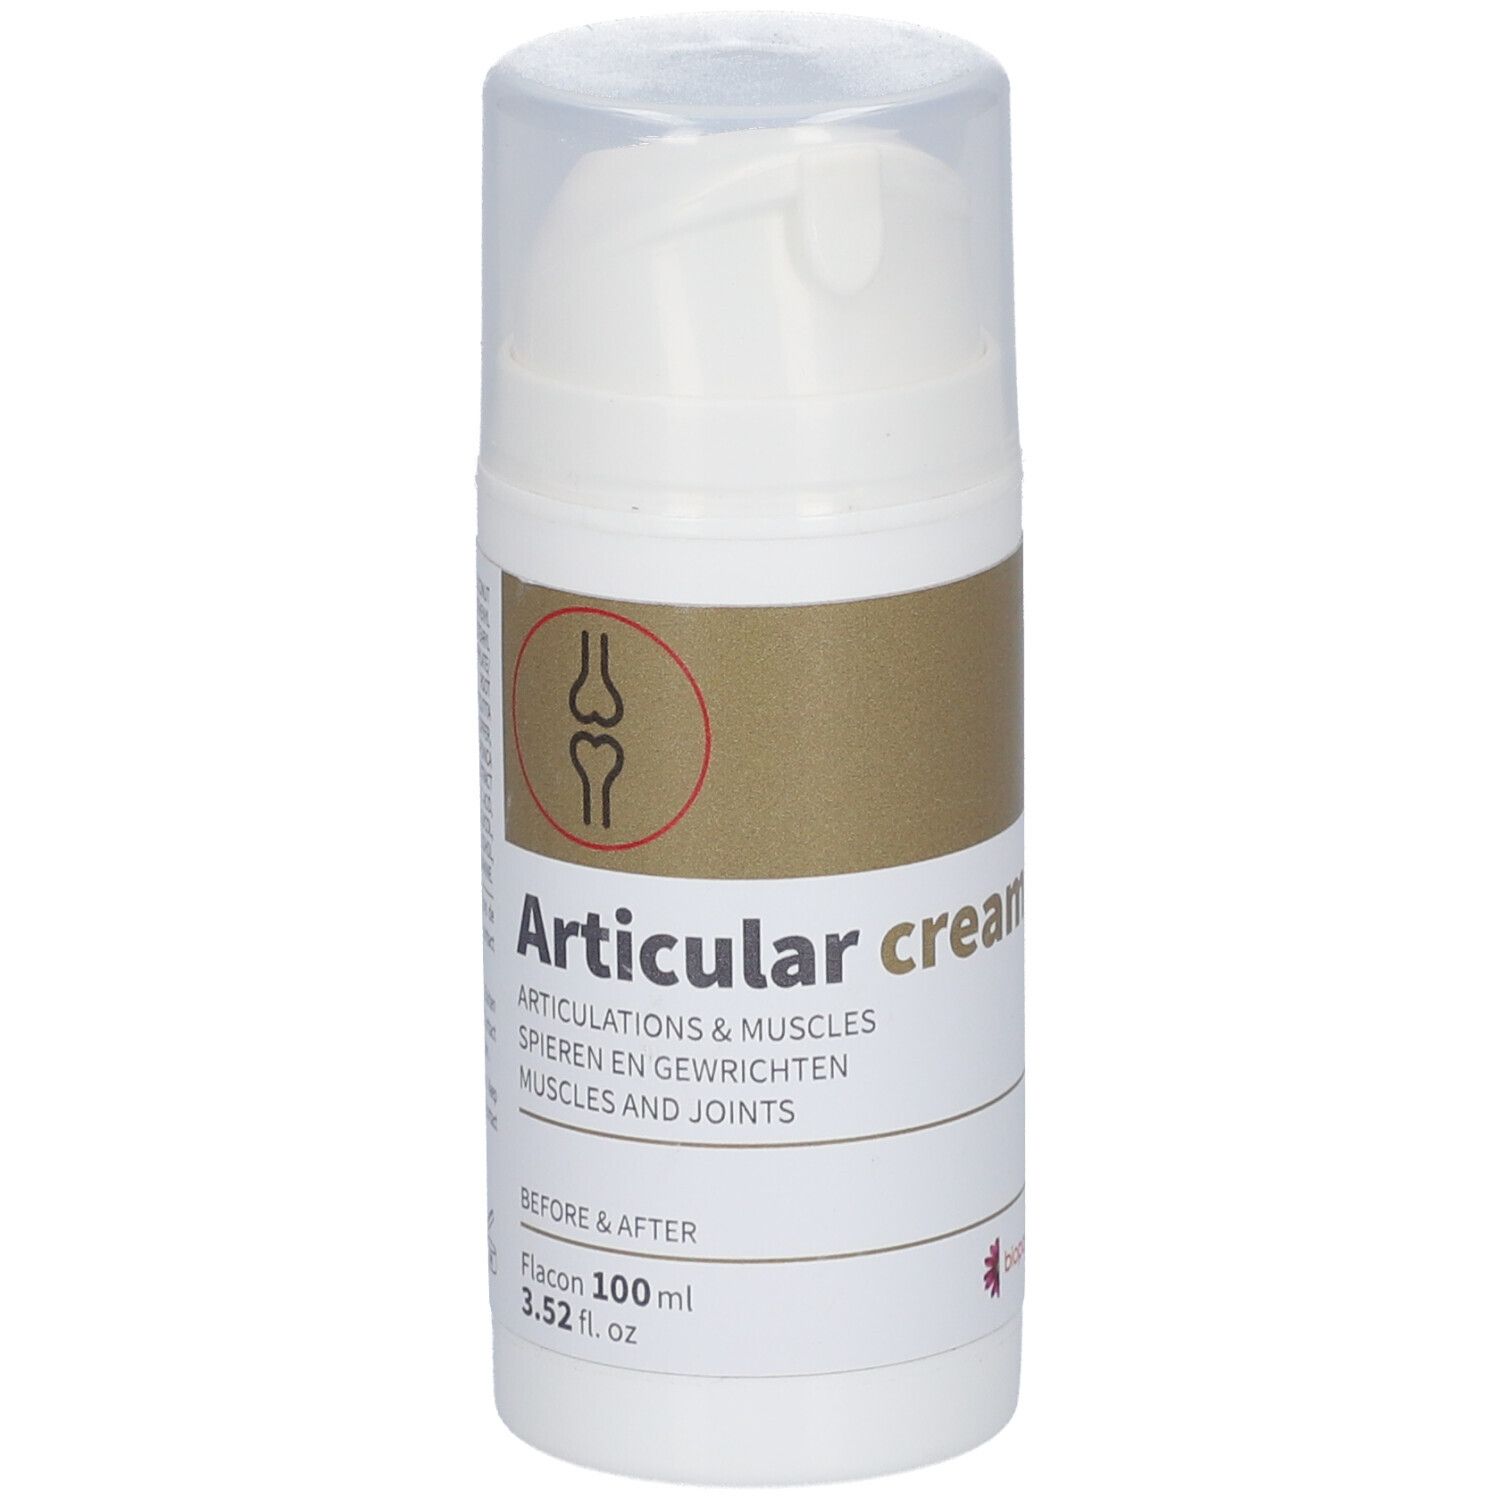 Image of Articular cream